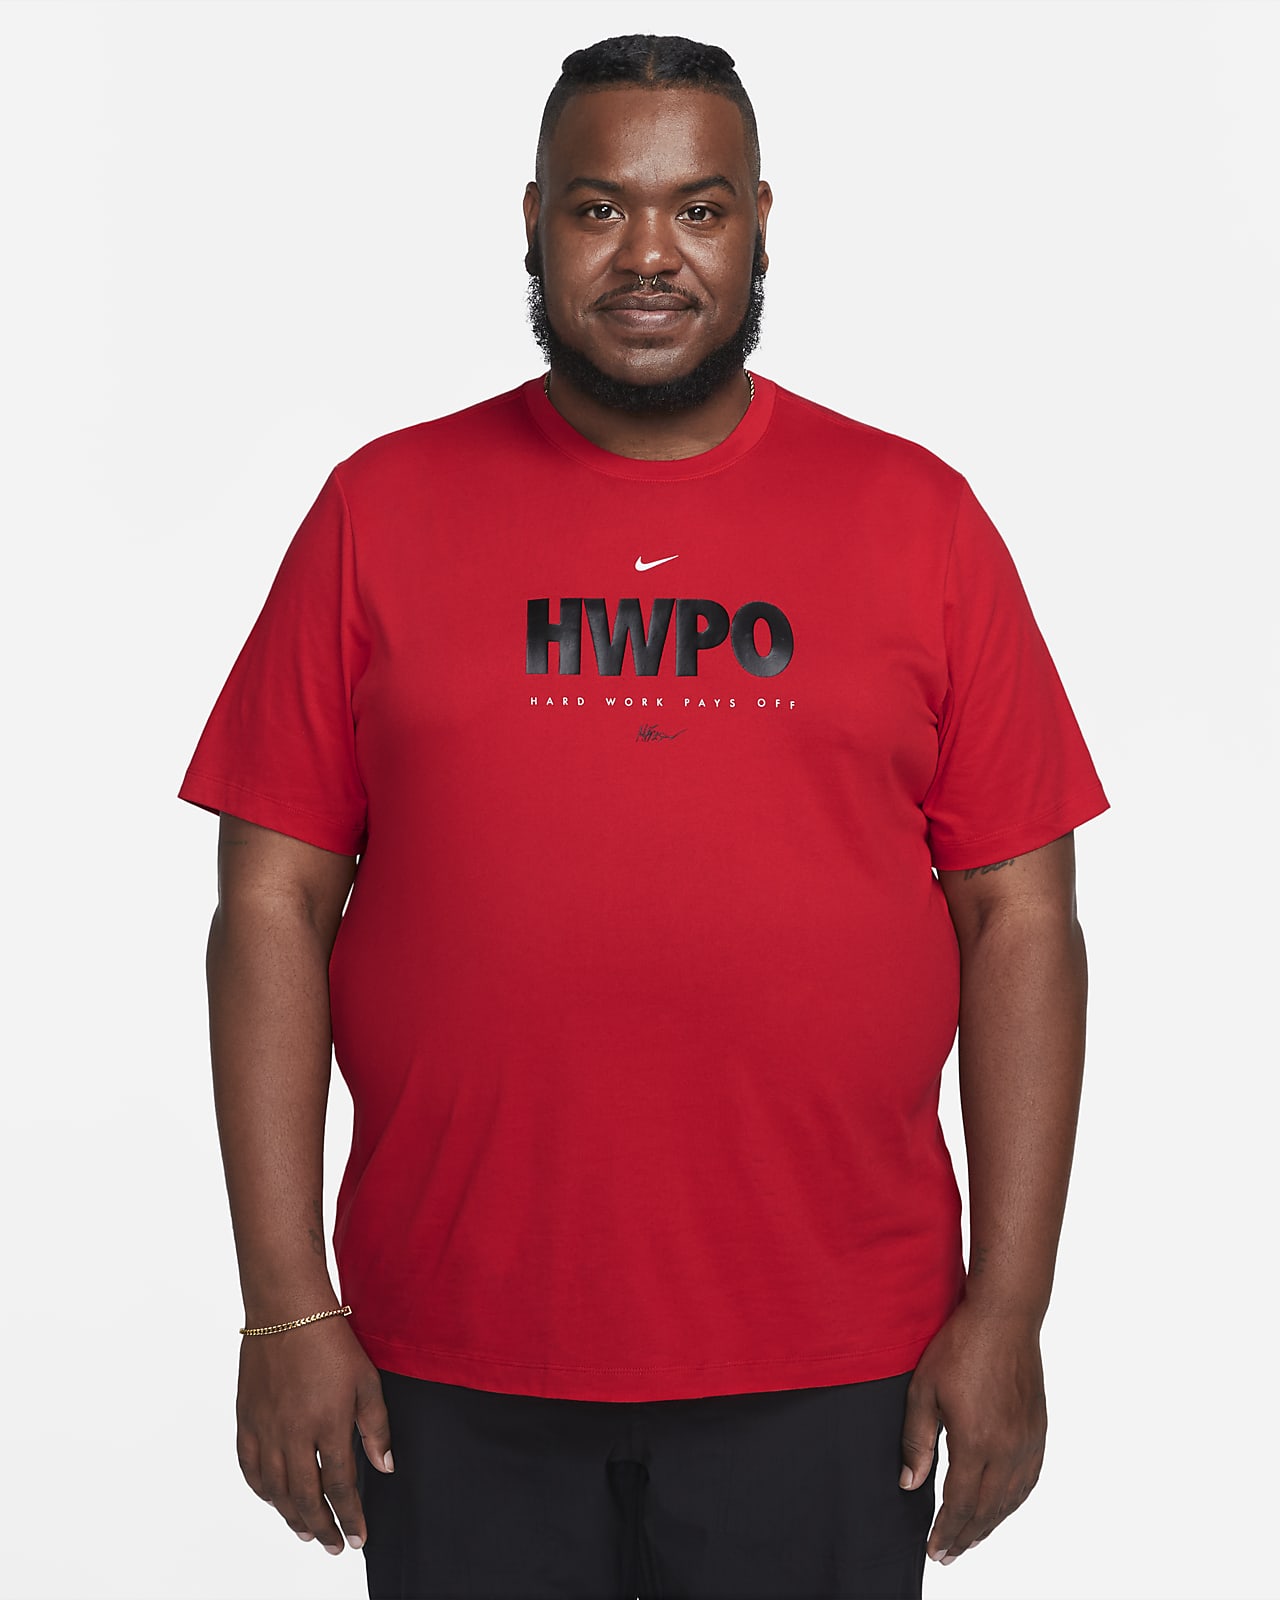 Nike Dri-FIT "HWPO" Men's T-Shirt. Nike.com